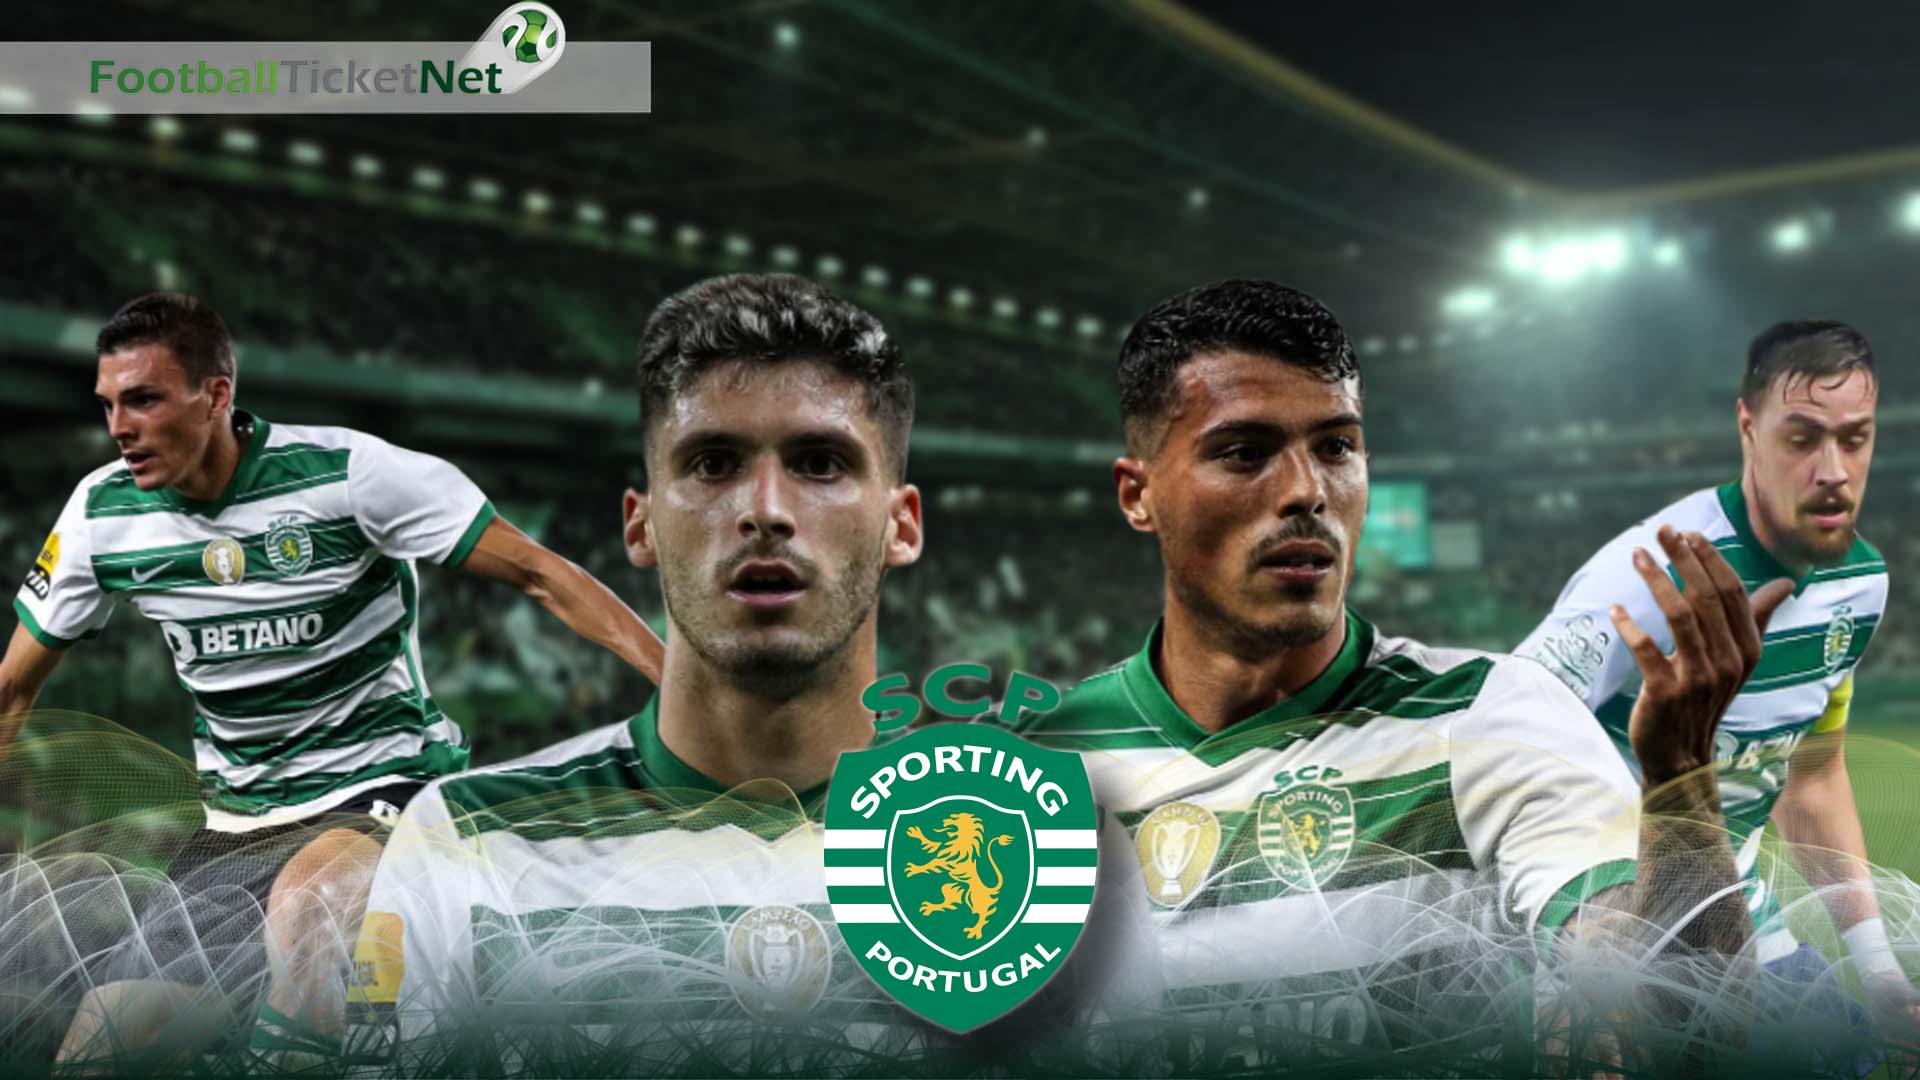 Buy Sporting Lisbon Football Tickets 2019/20 | Football Ticket Net